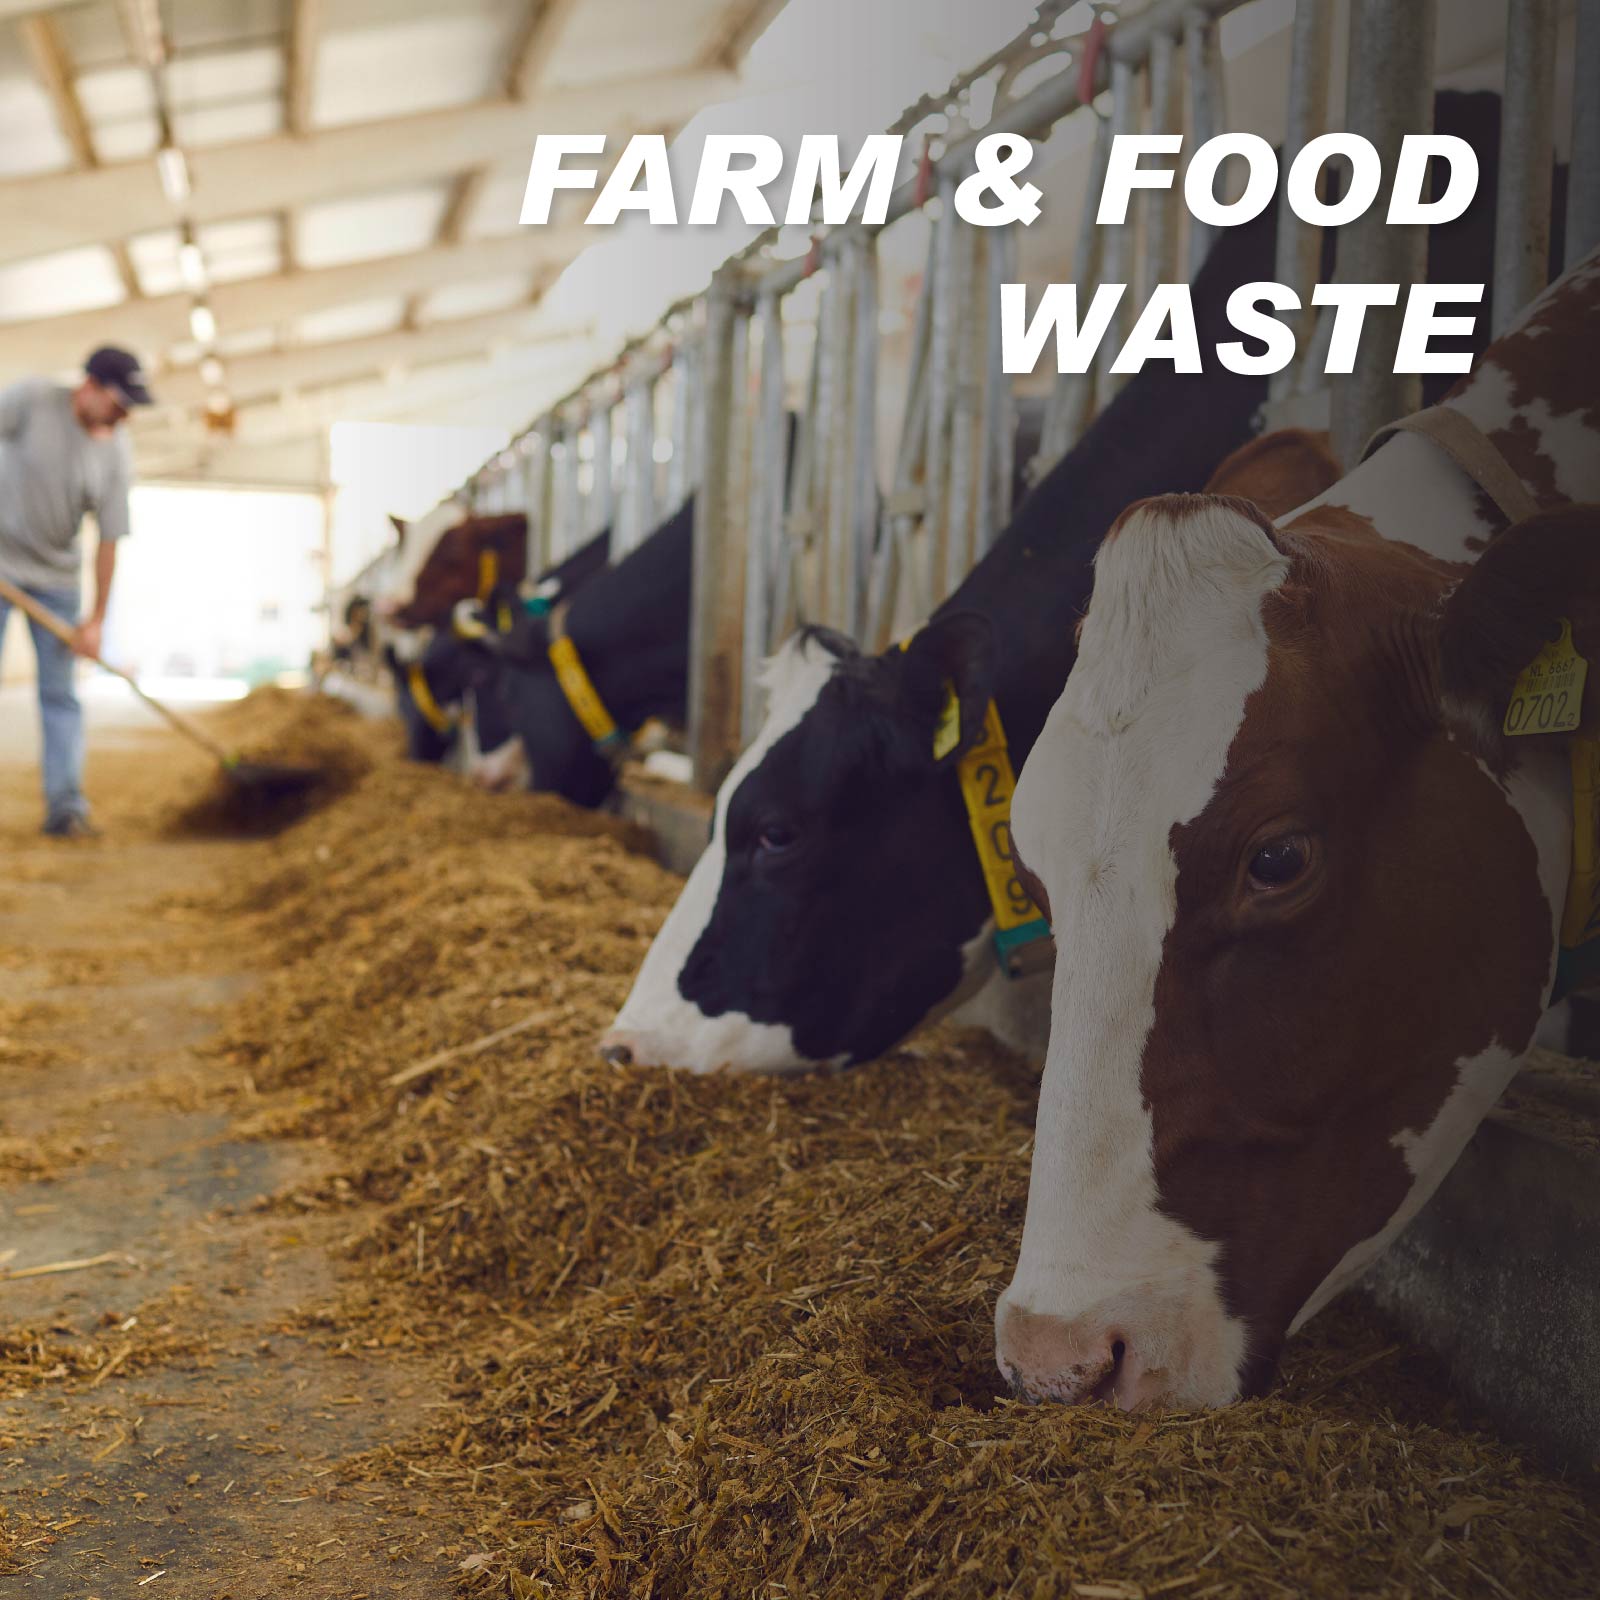 Farm & Food Waste Recycling